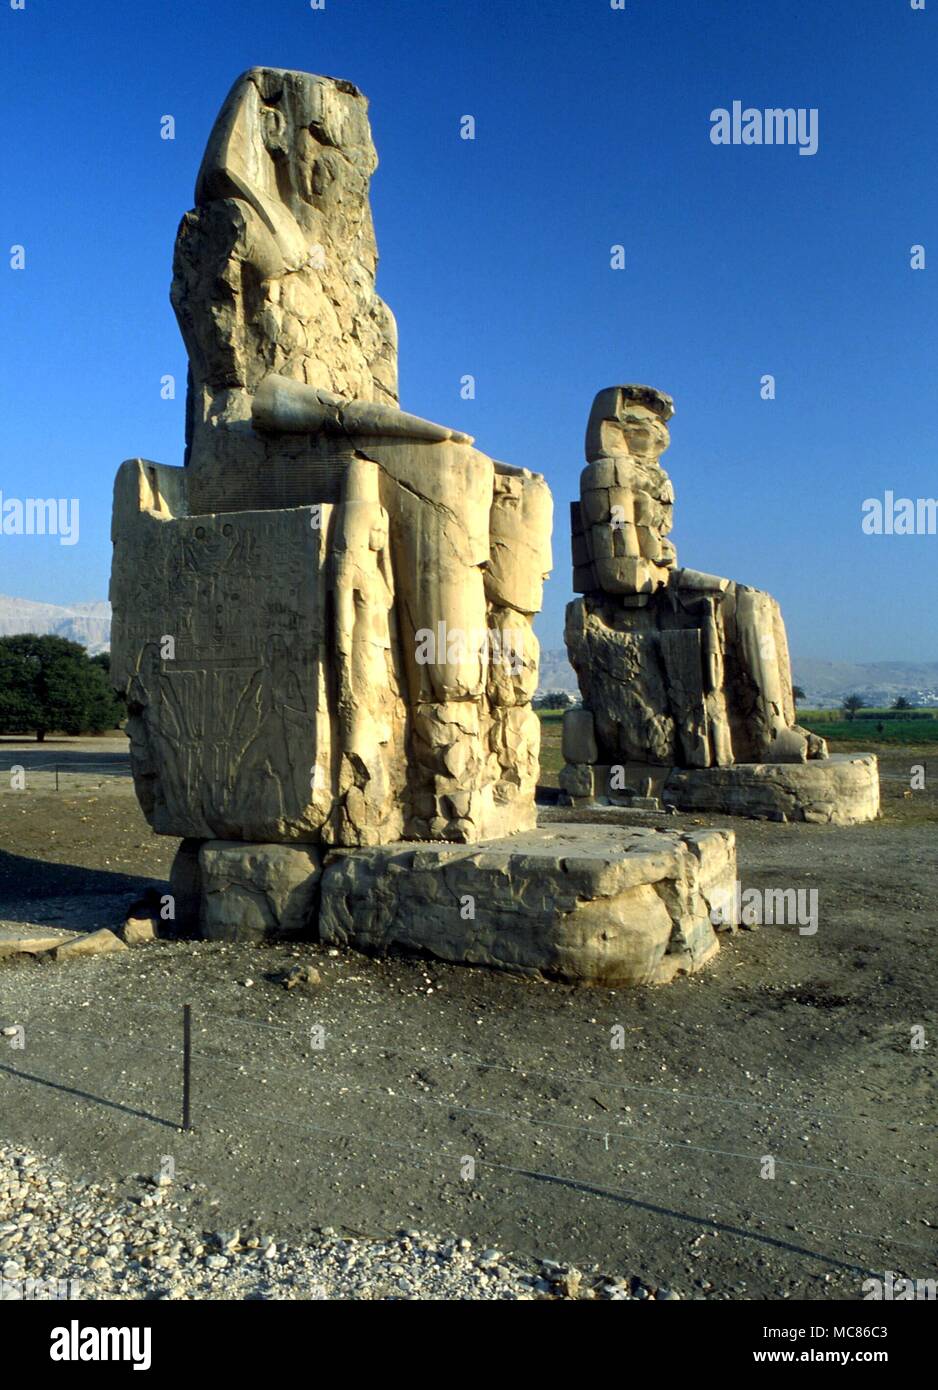 Mythe égyptien - colosses de Memnon les statues géantes de Memnon, un de qui était censée accueillir le soleil levant avec chanson. En fait, ce sont les seuls vestiges d'un immense temple, dont ils étaient les gardiens de portail Banque D'Images